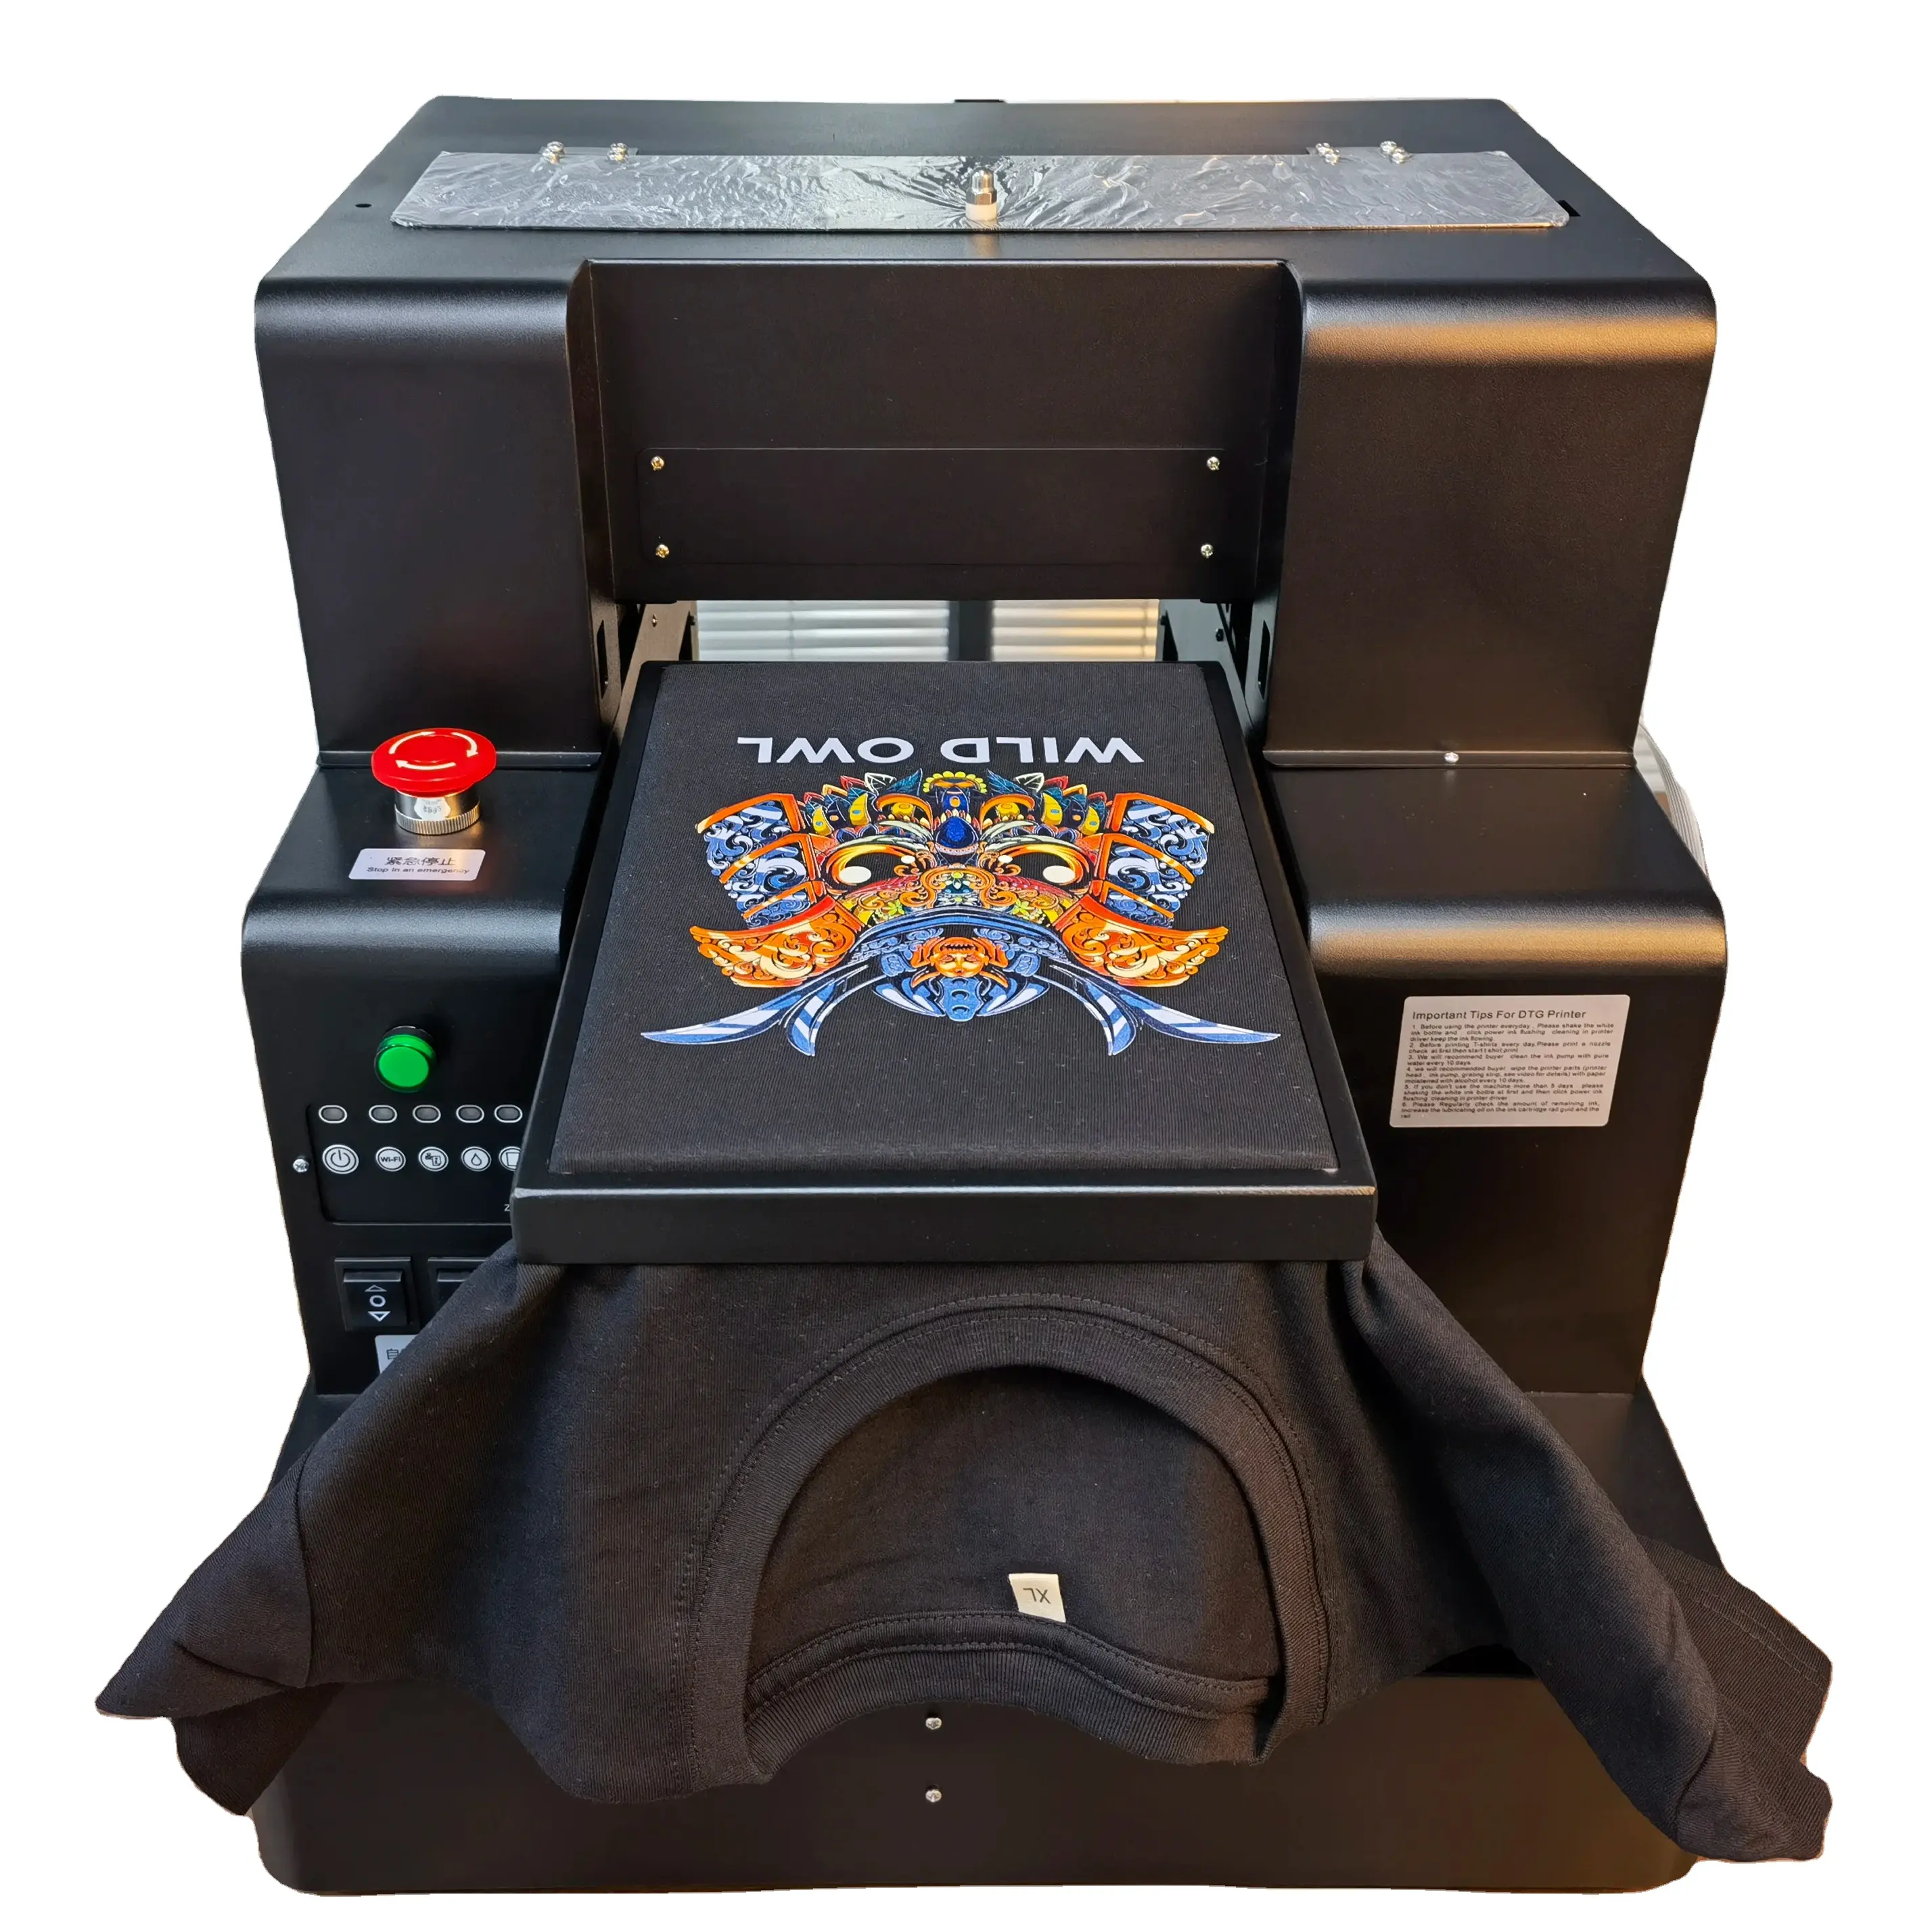 ماكينة طباعة DTG رقمية أوتوماتيكية بالكامل على مقاس A4 للطباعة على القمصان المخصصة مباشرة معتمدة بشهادة CE